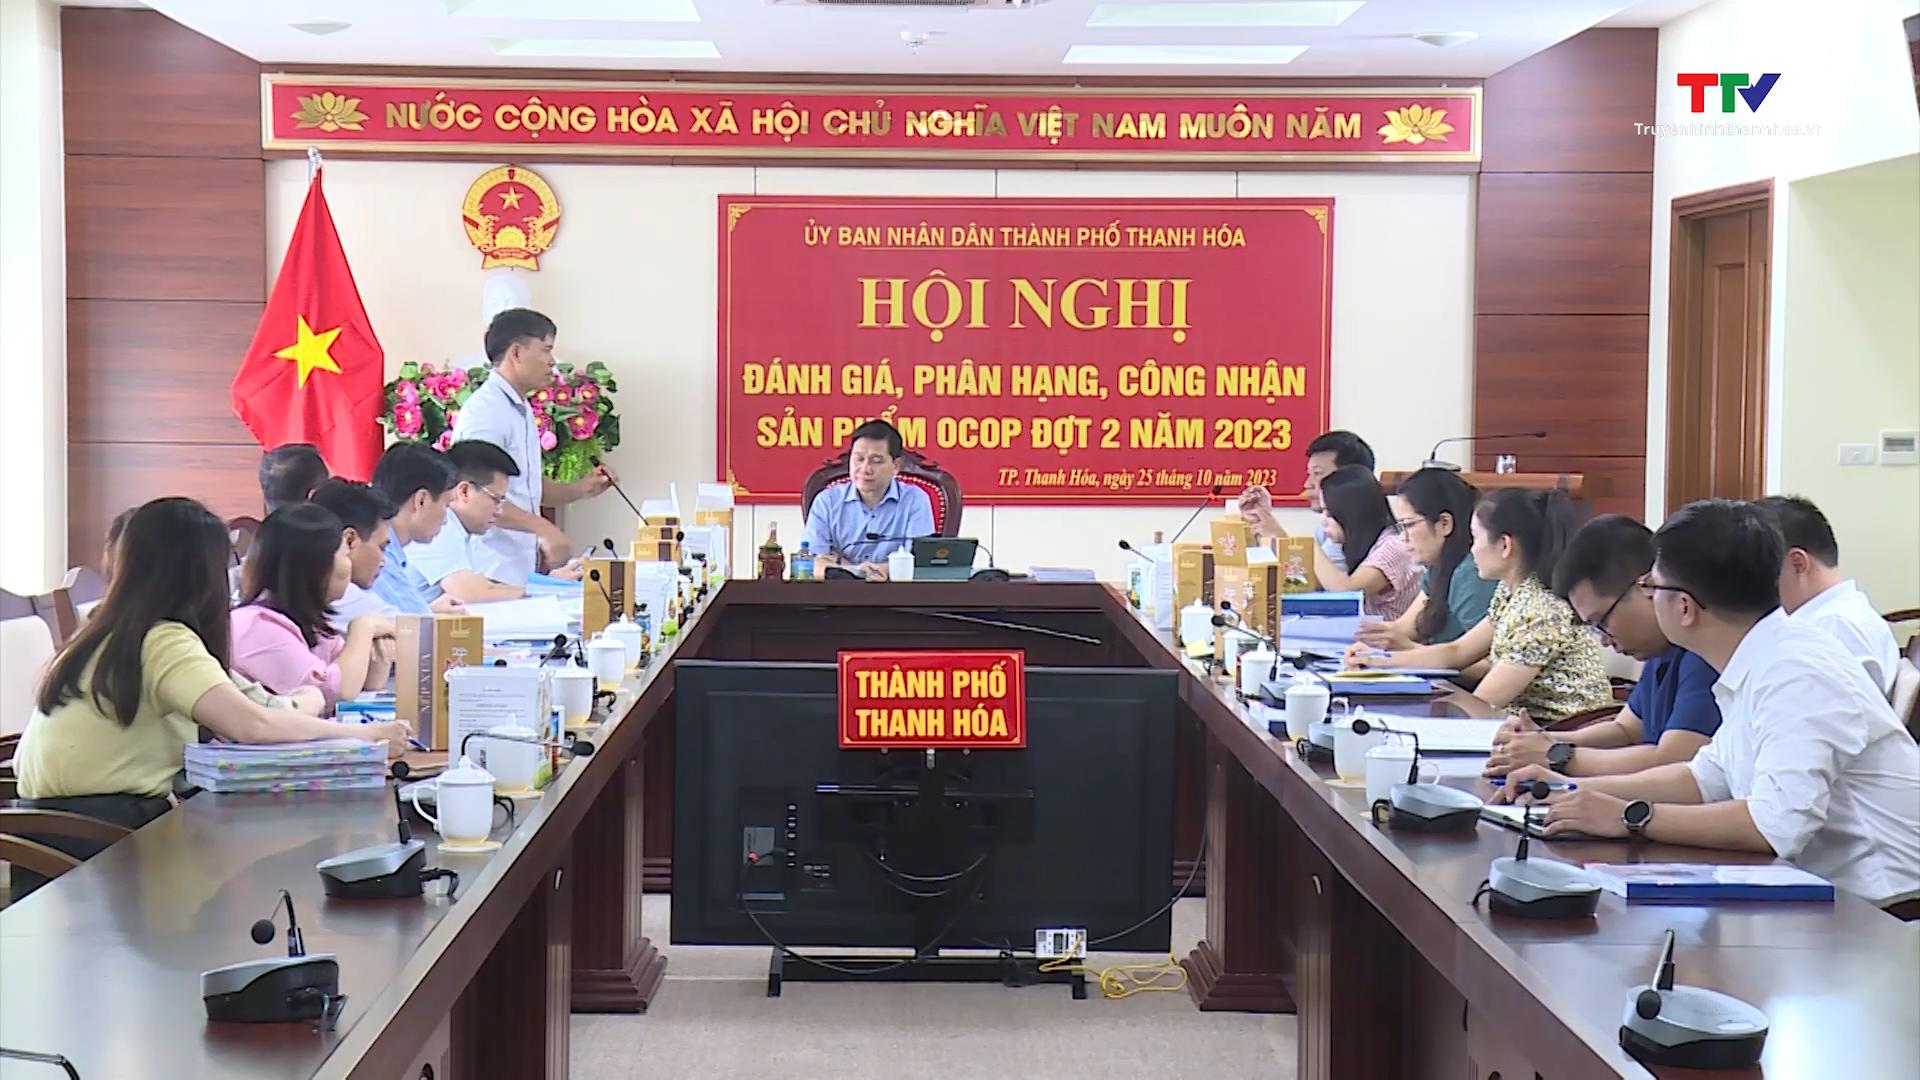 Tin tổng hợp hoạt động chính trị, kinh tế, văn hóa, xã hội trên địa bàn thành phố Thanh Hóa ngày 01/11/2023 - Ảnh 5.